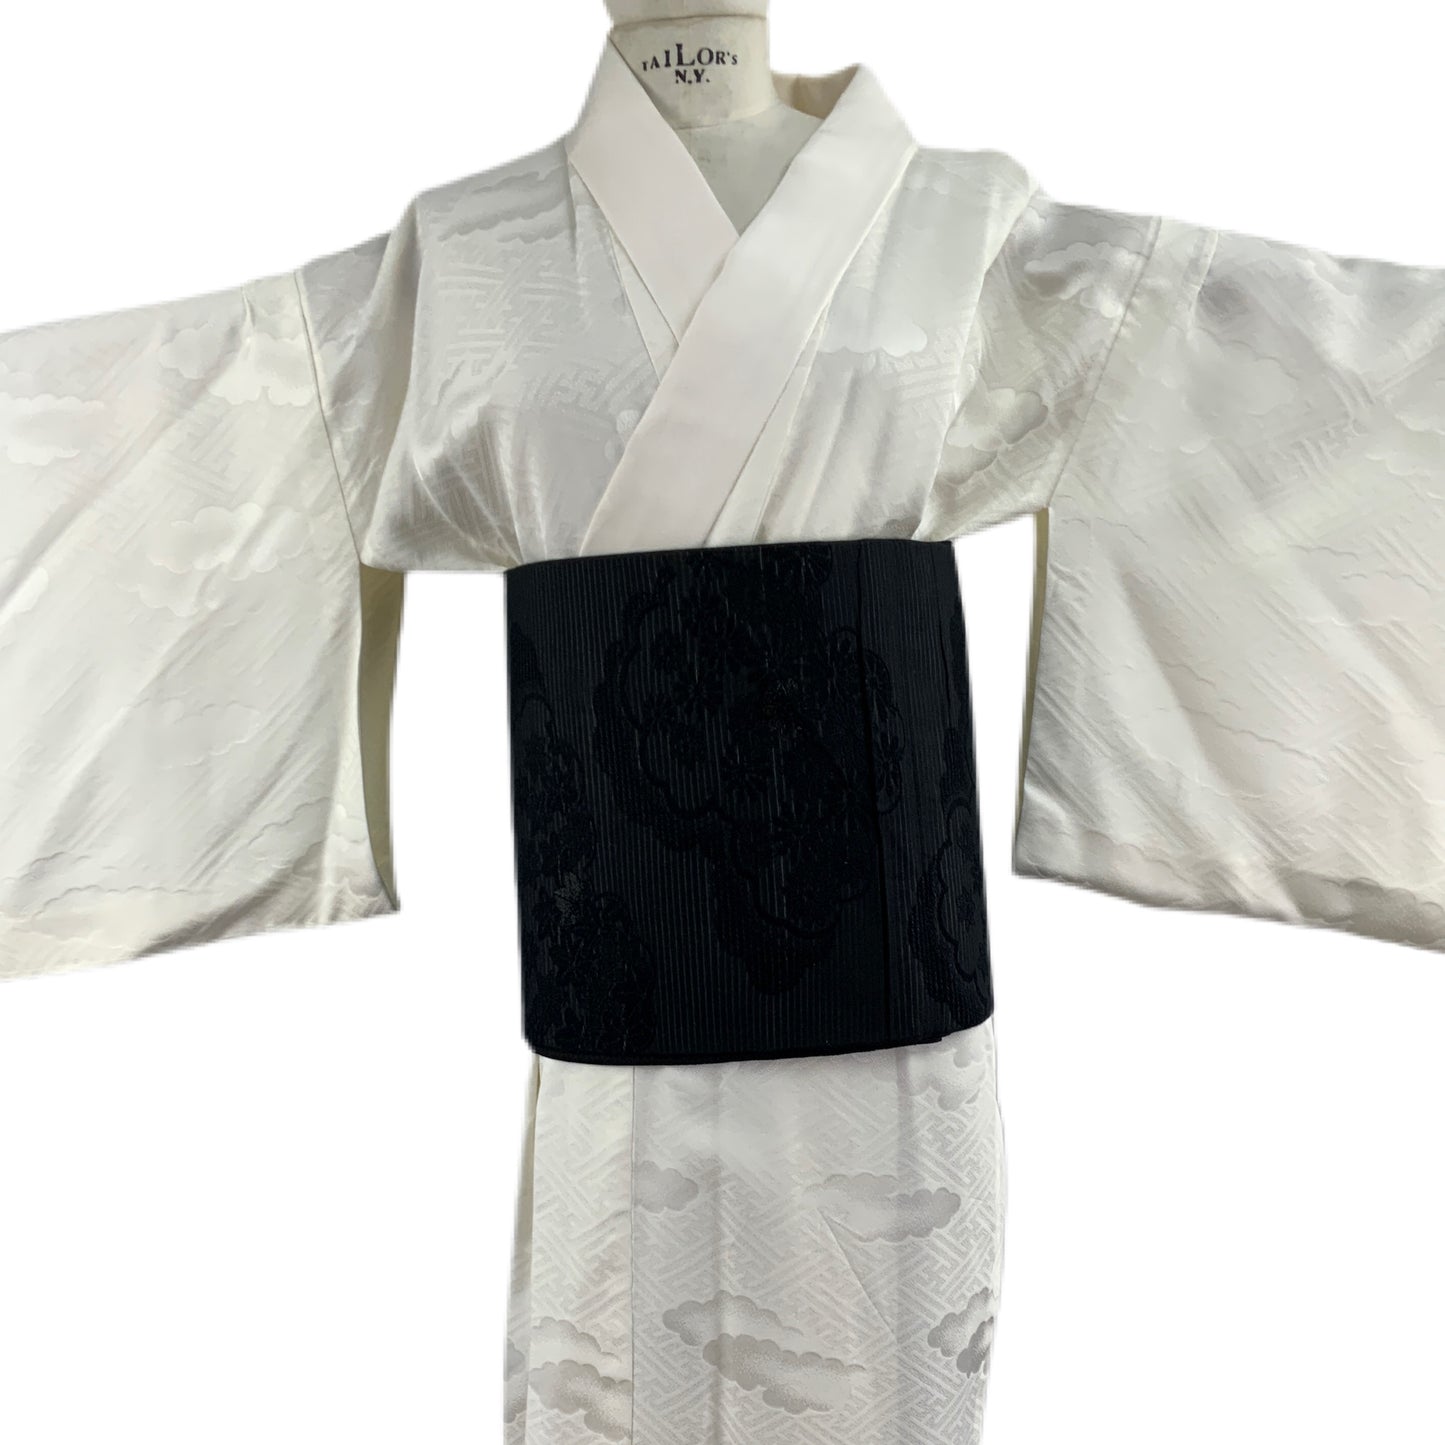 OBI Original Schwarzer japanischer Gürtel für Kimono mit 108-Motiv